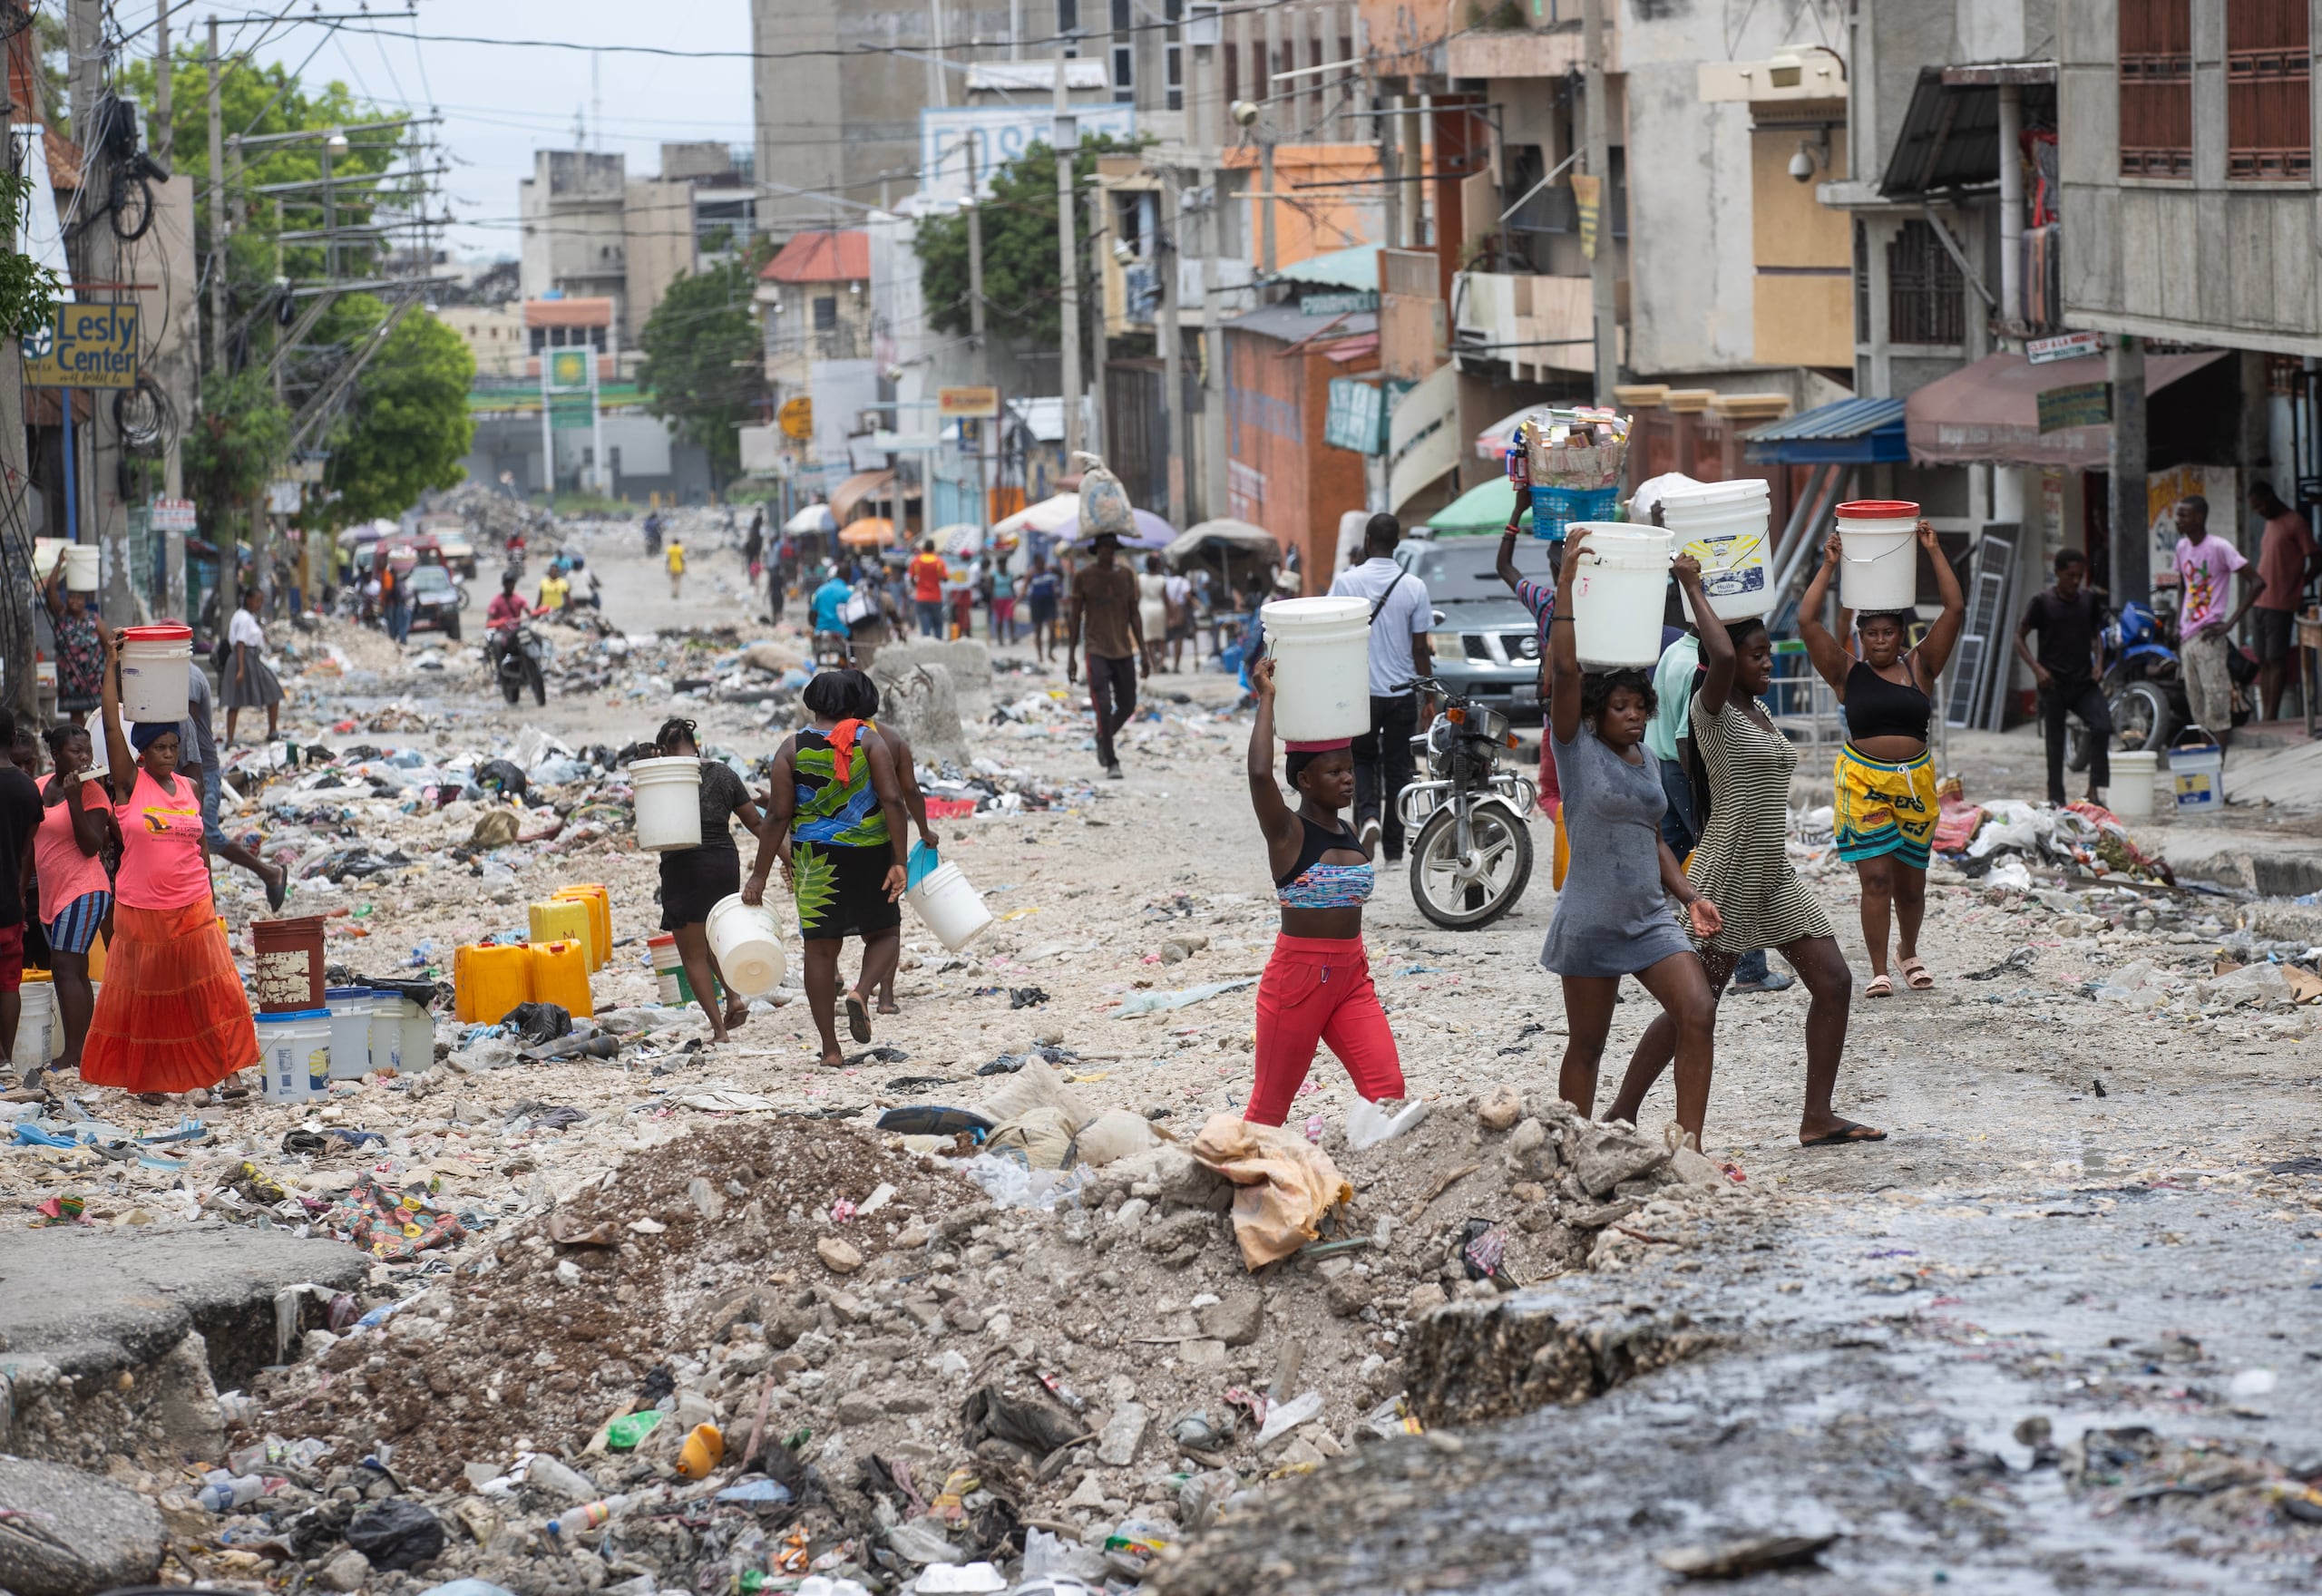 Haití está inmerso en una crisis económica y sociopolítica aguda y sufre una violencia que solo el año pasado causó 8,000 víctimas y que se ha agravado desde febrero pasado.